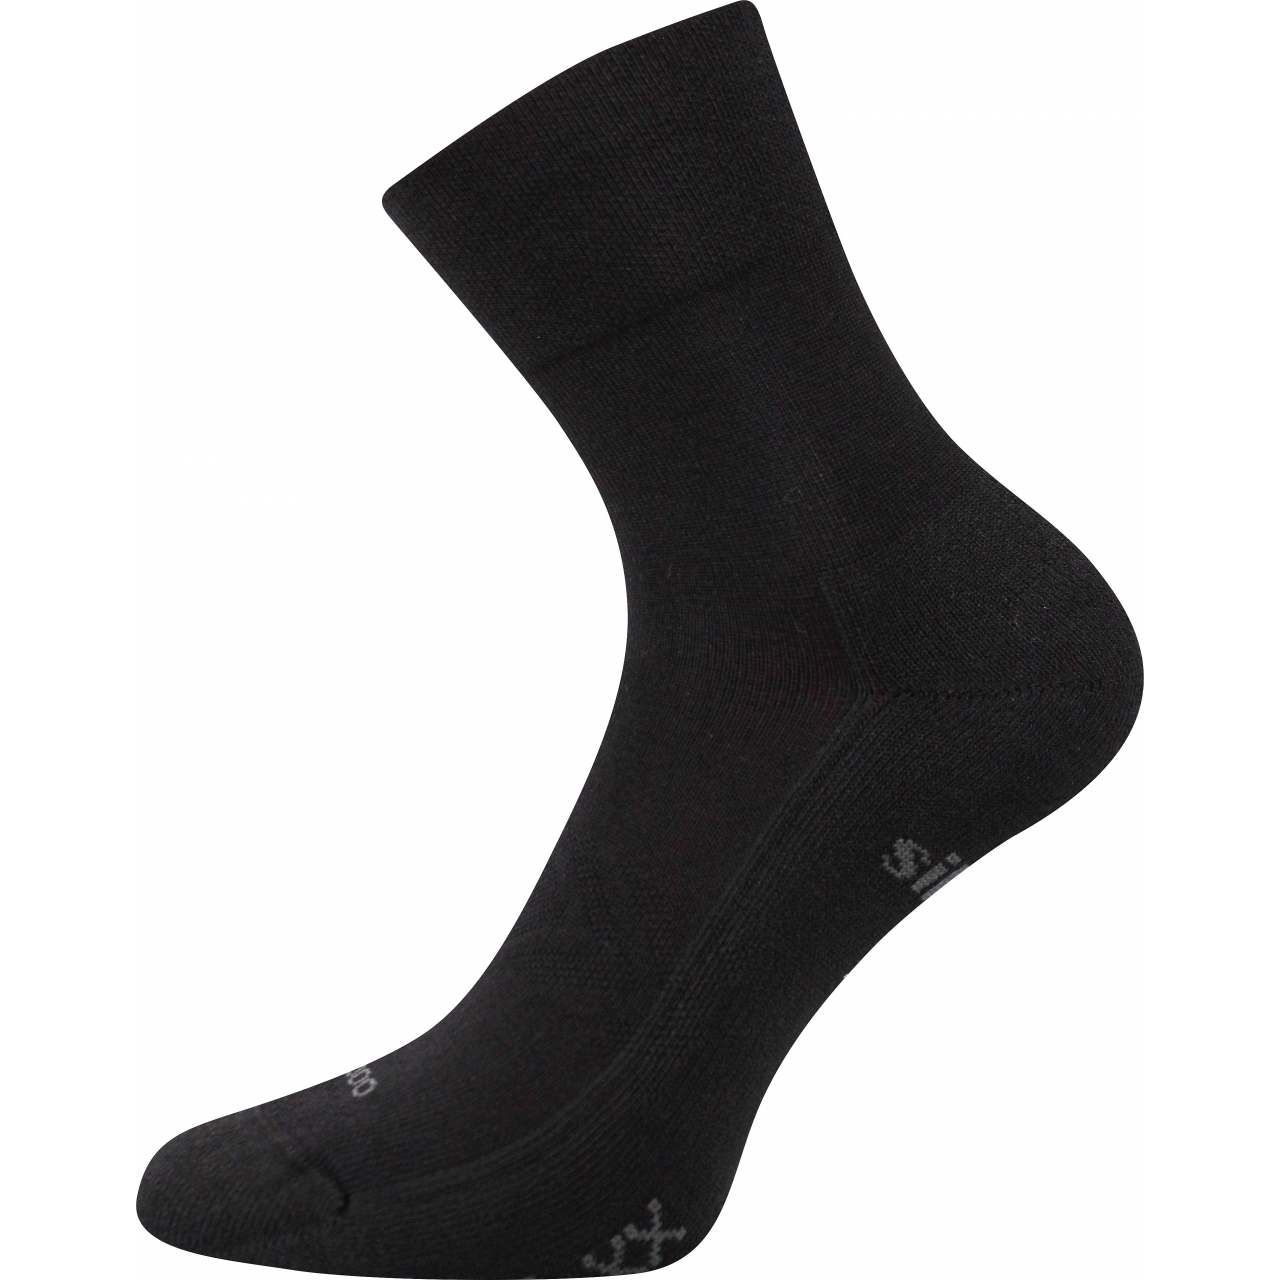 Ponožky sportovní unisex Voxx Esencis - černé, 43-46